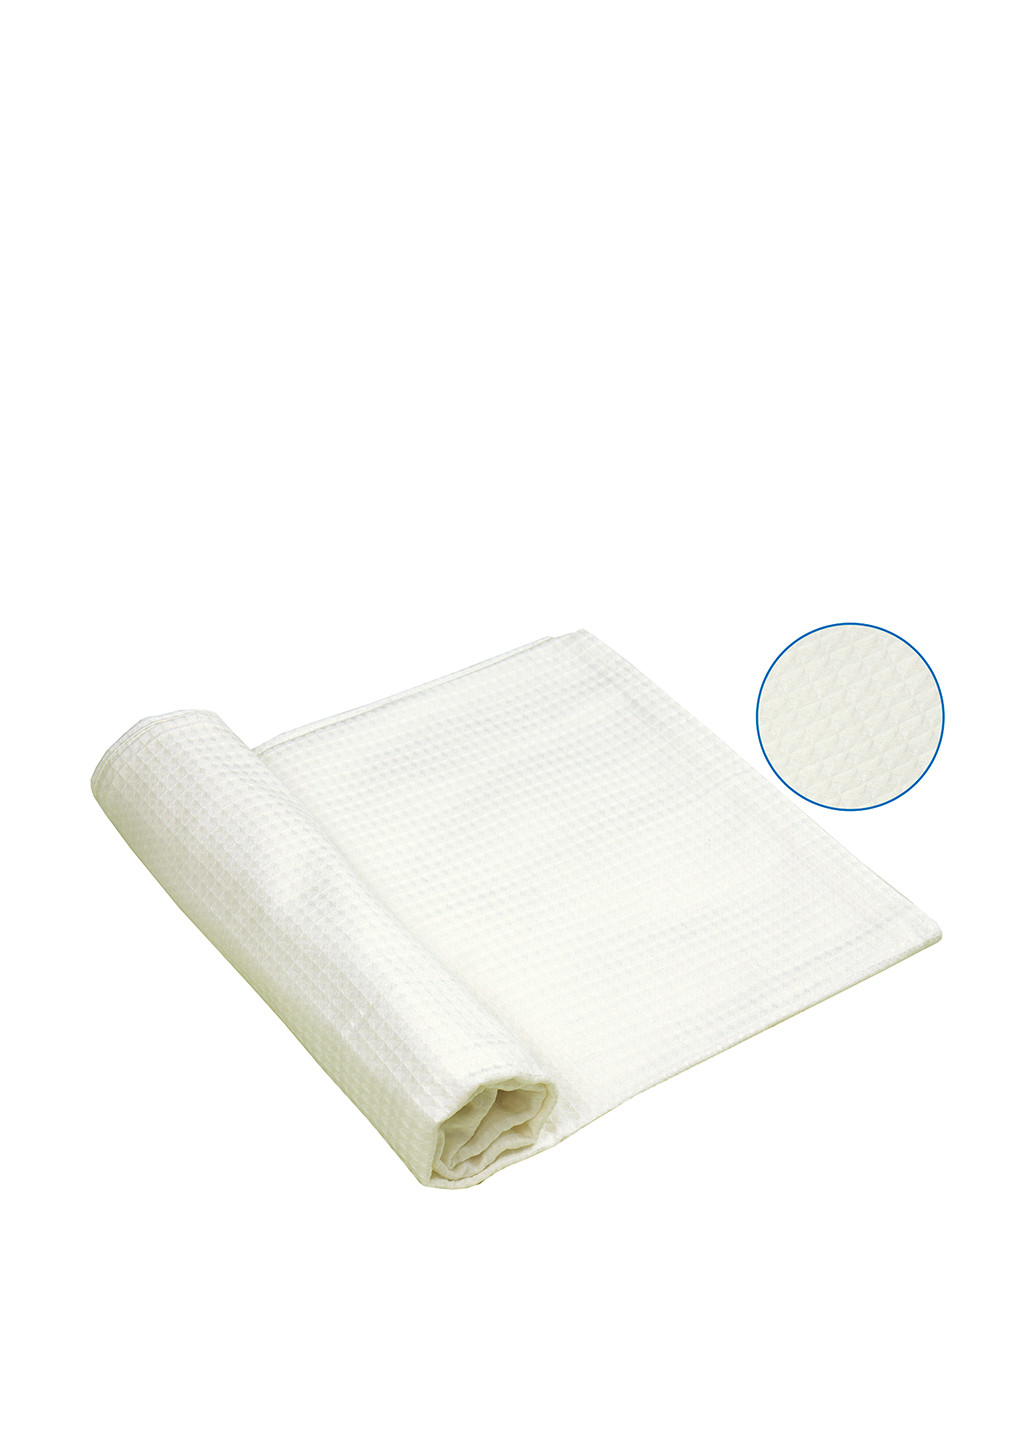 Руно полотенце для сауны, 100х150 см белый производство - Украина